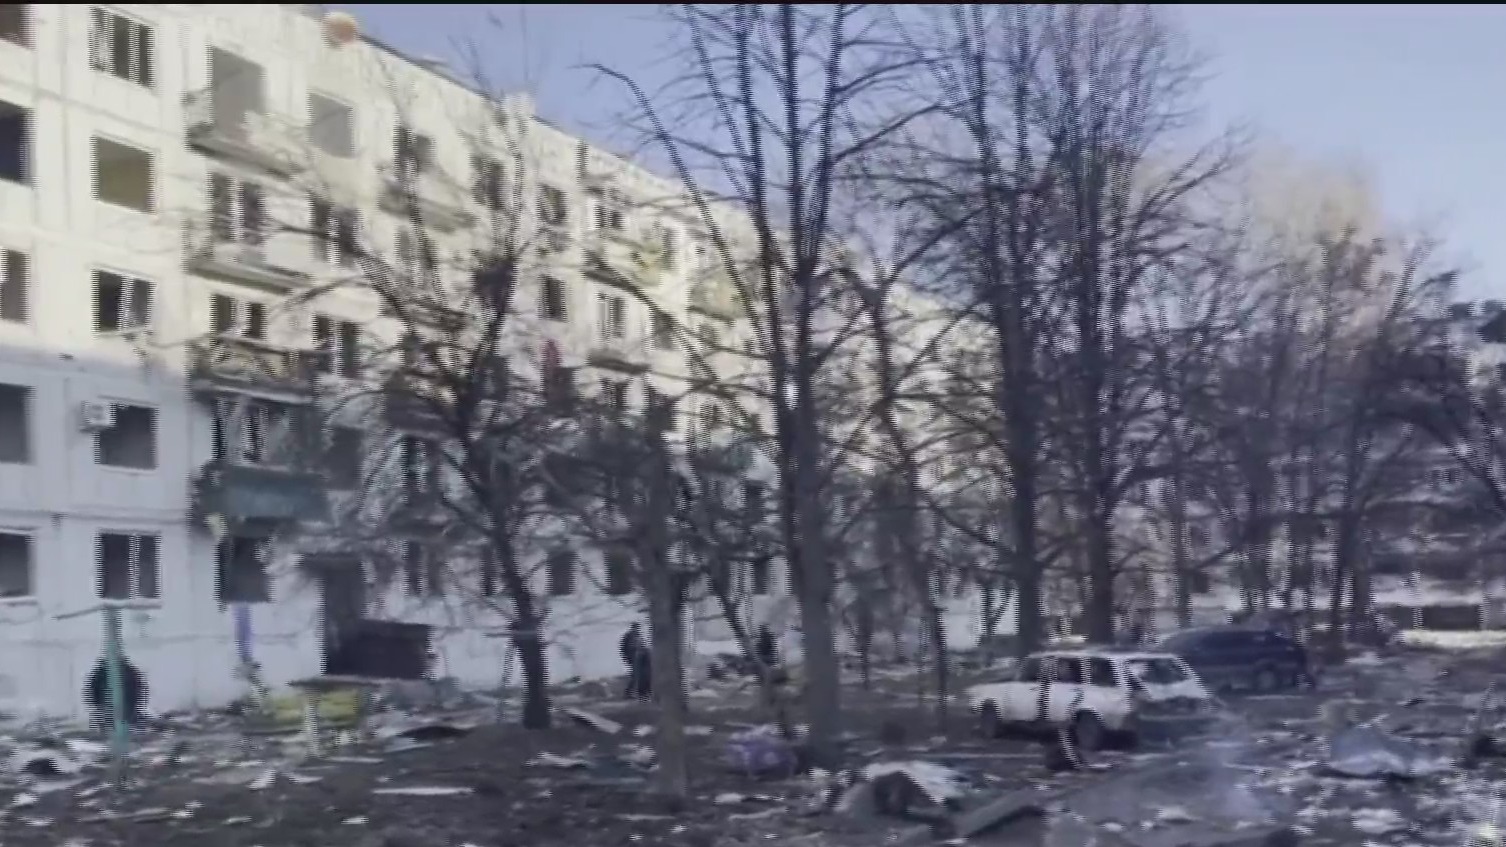 asi se ven los edificios residenciales bombardeados en kiev